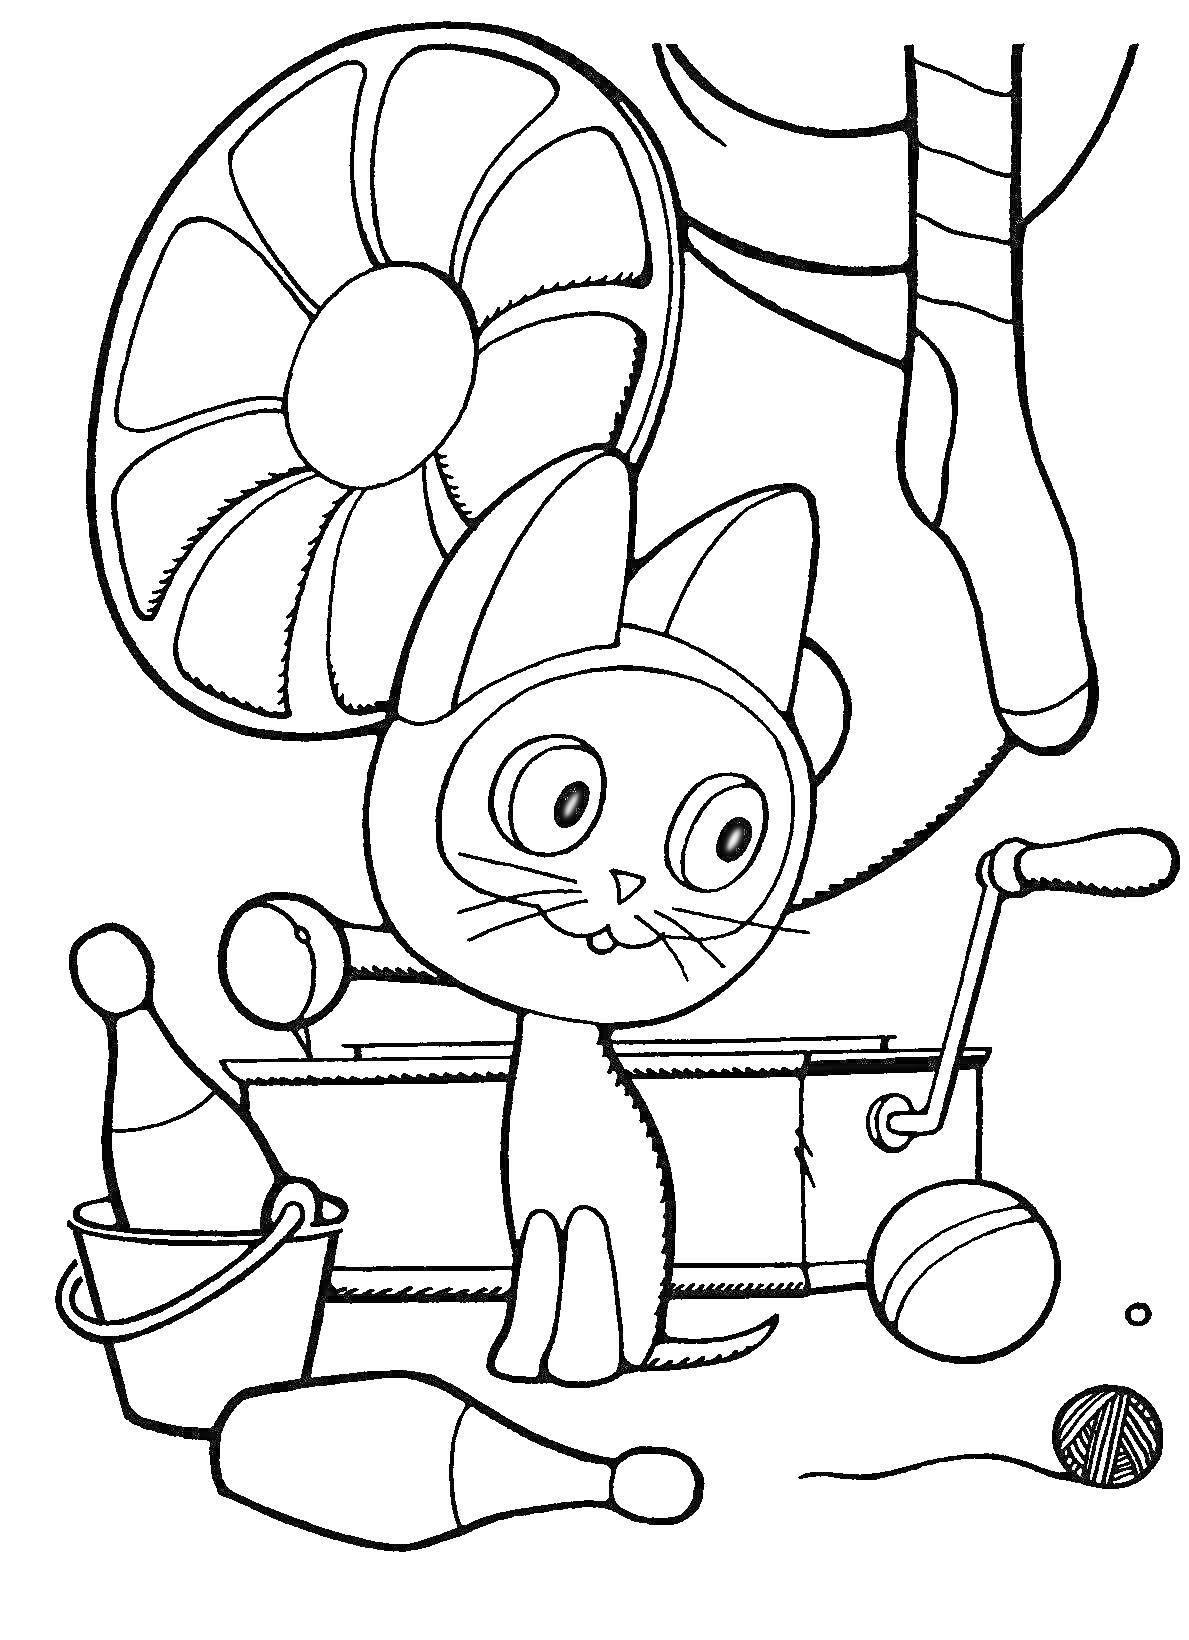 Котёнок по имени Гав с барабаном, булавами и клубком ниток